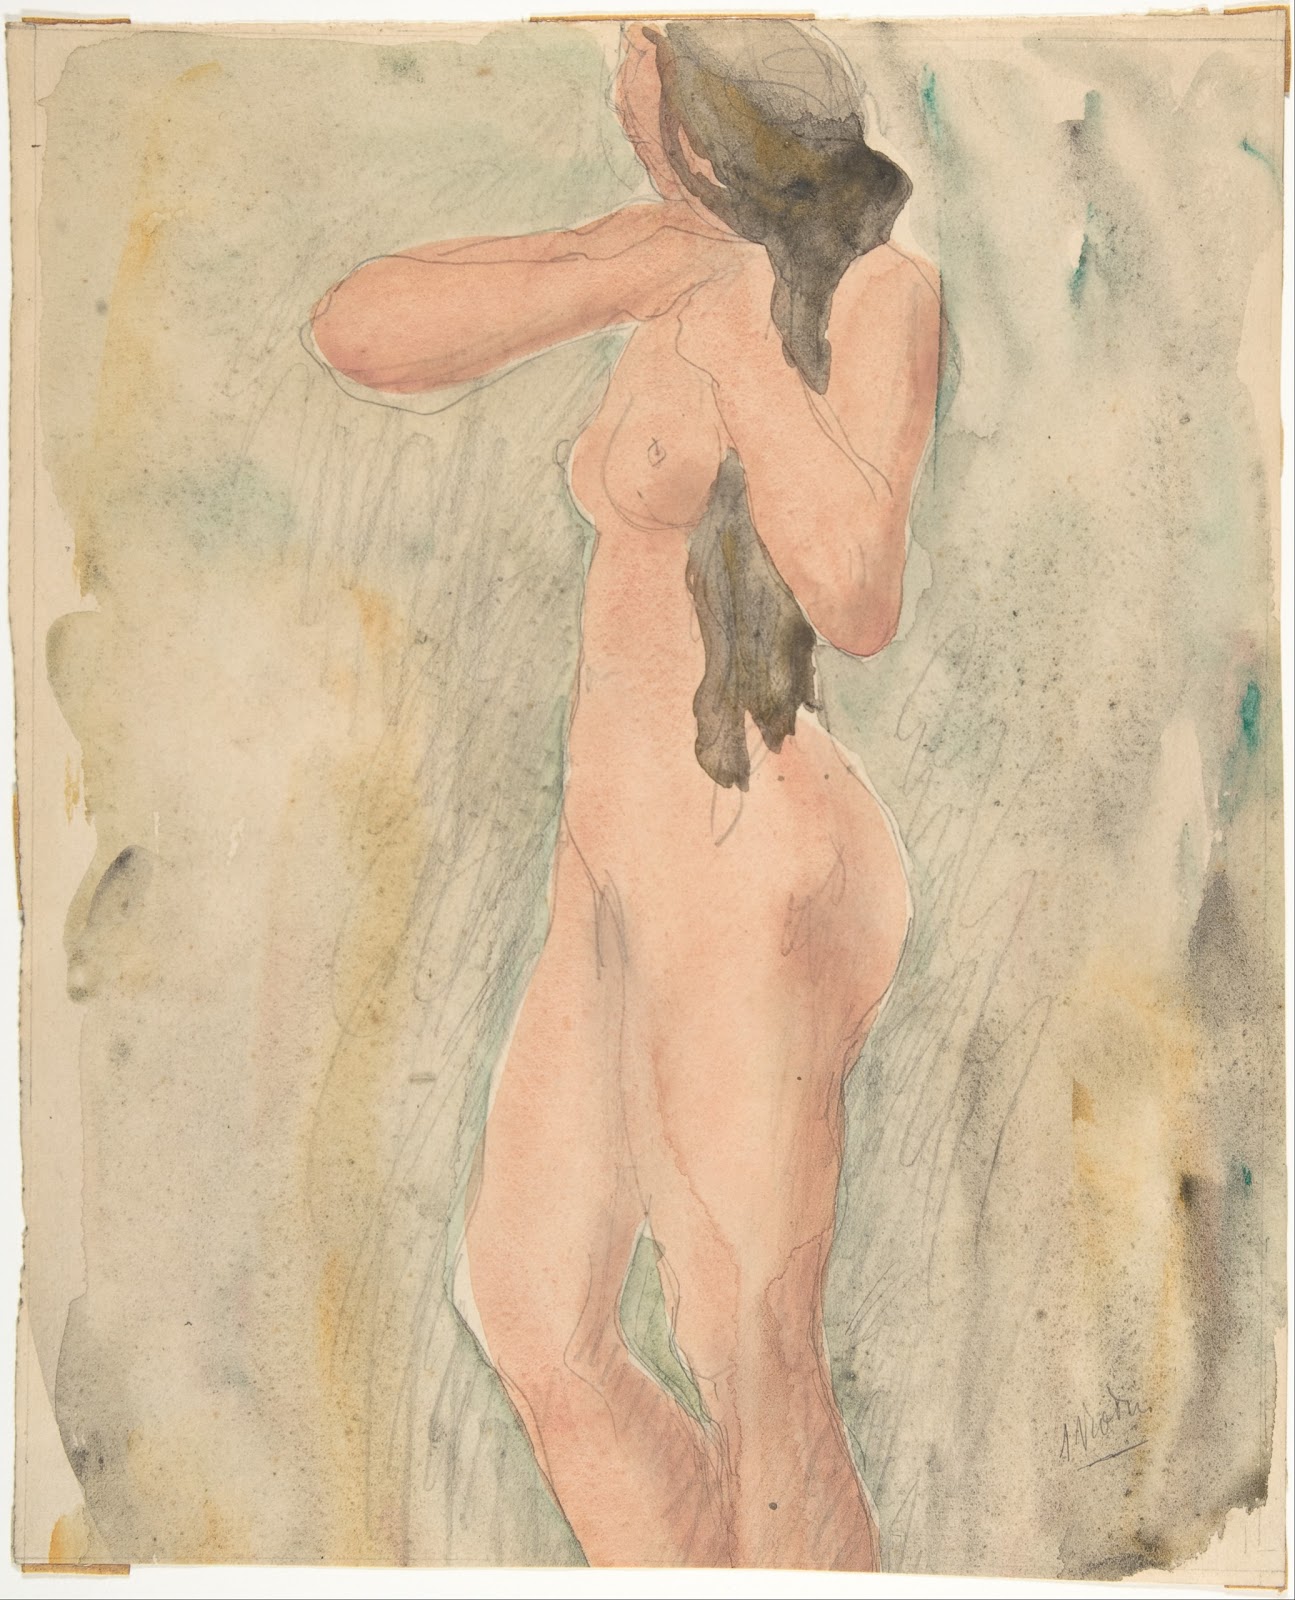 Auguste+Rodin-1840-1917 (183).jpg